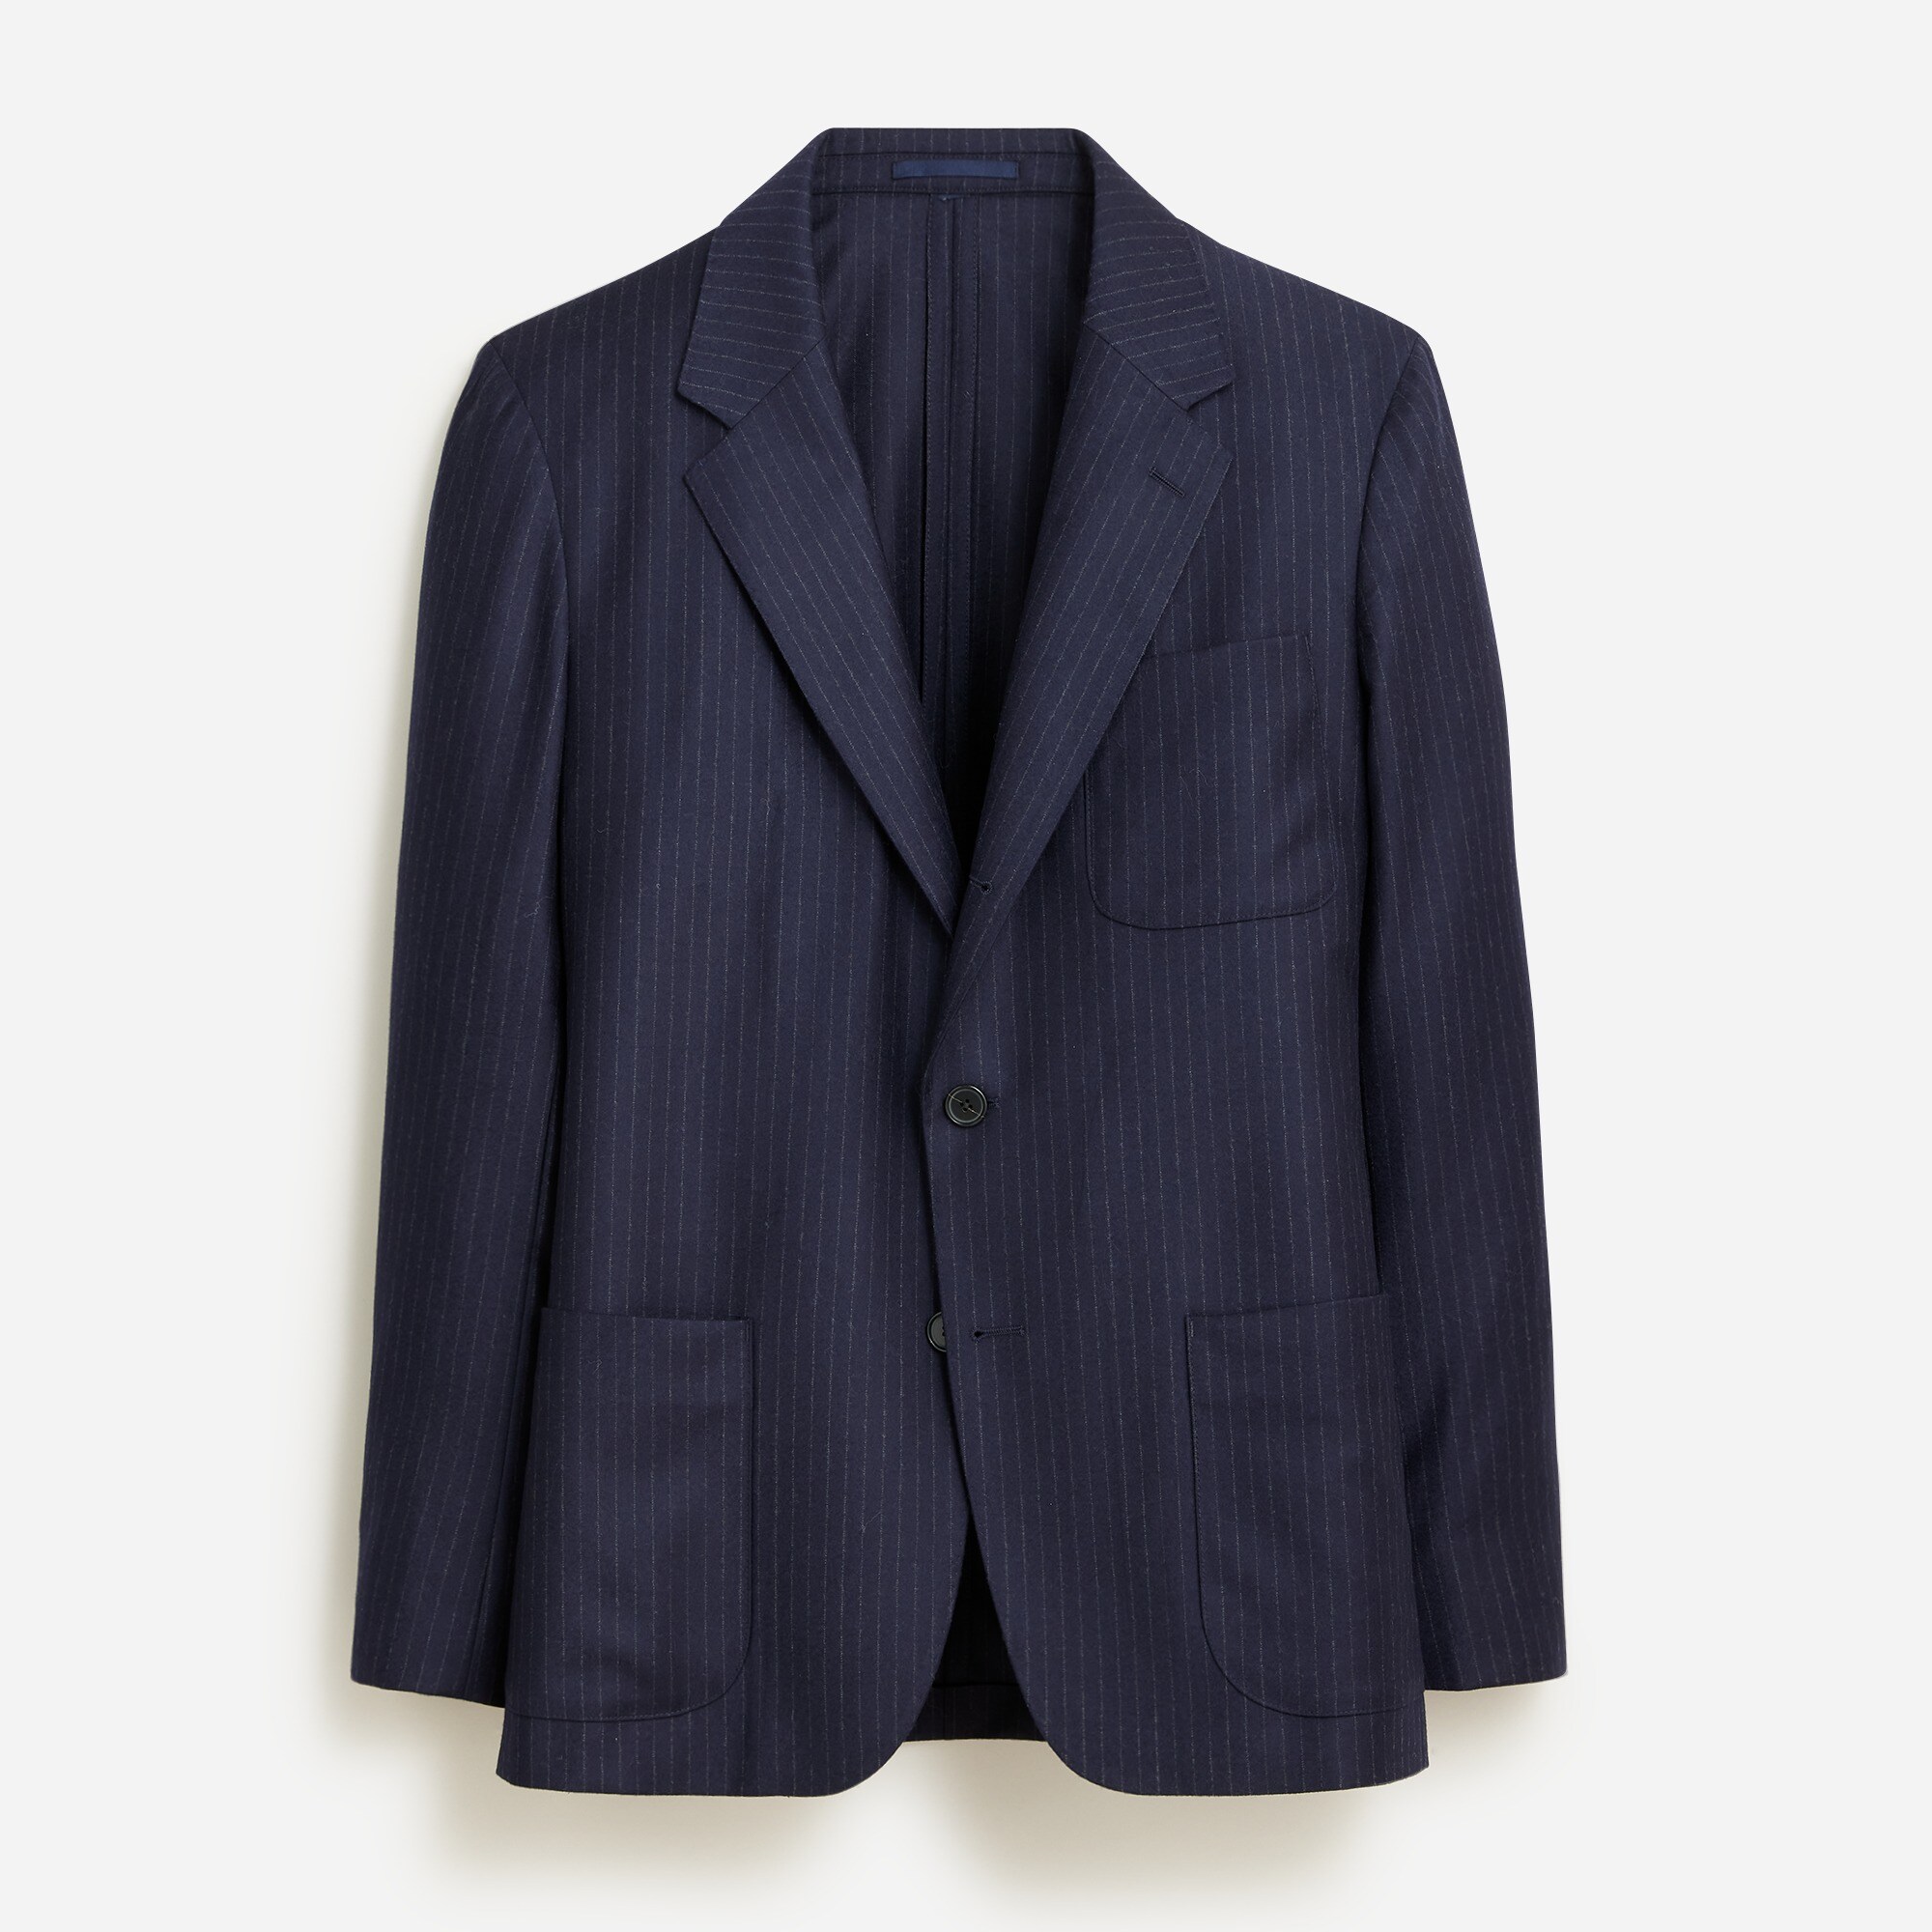  Kenmare Relaxed-fit suit jacket in Italian wool flannel chalk stripe